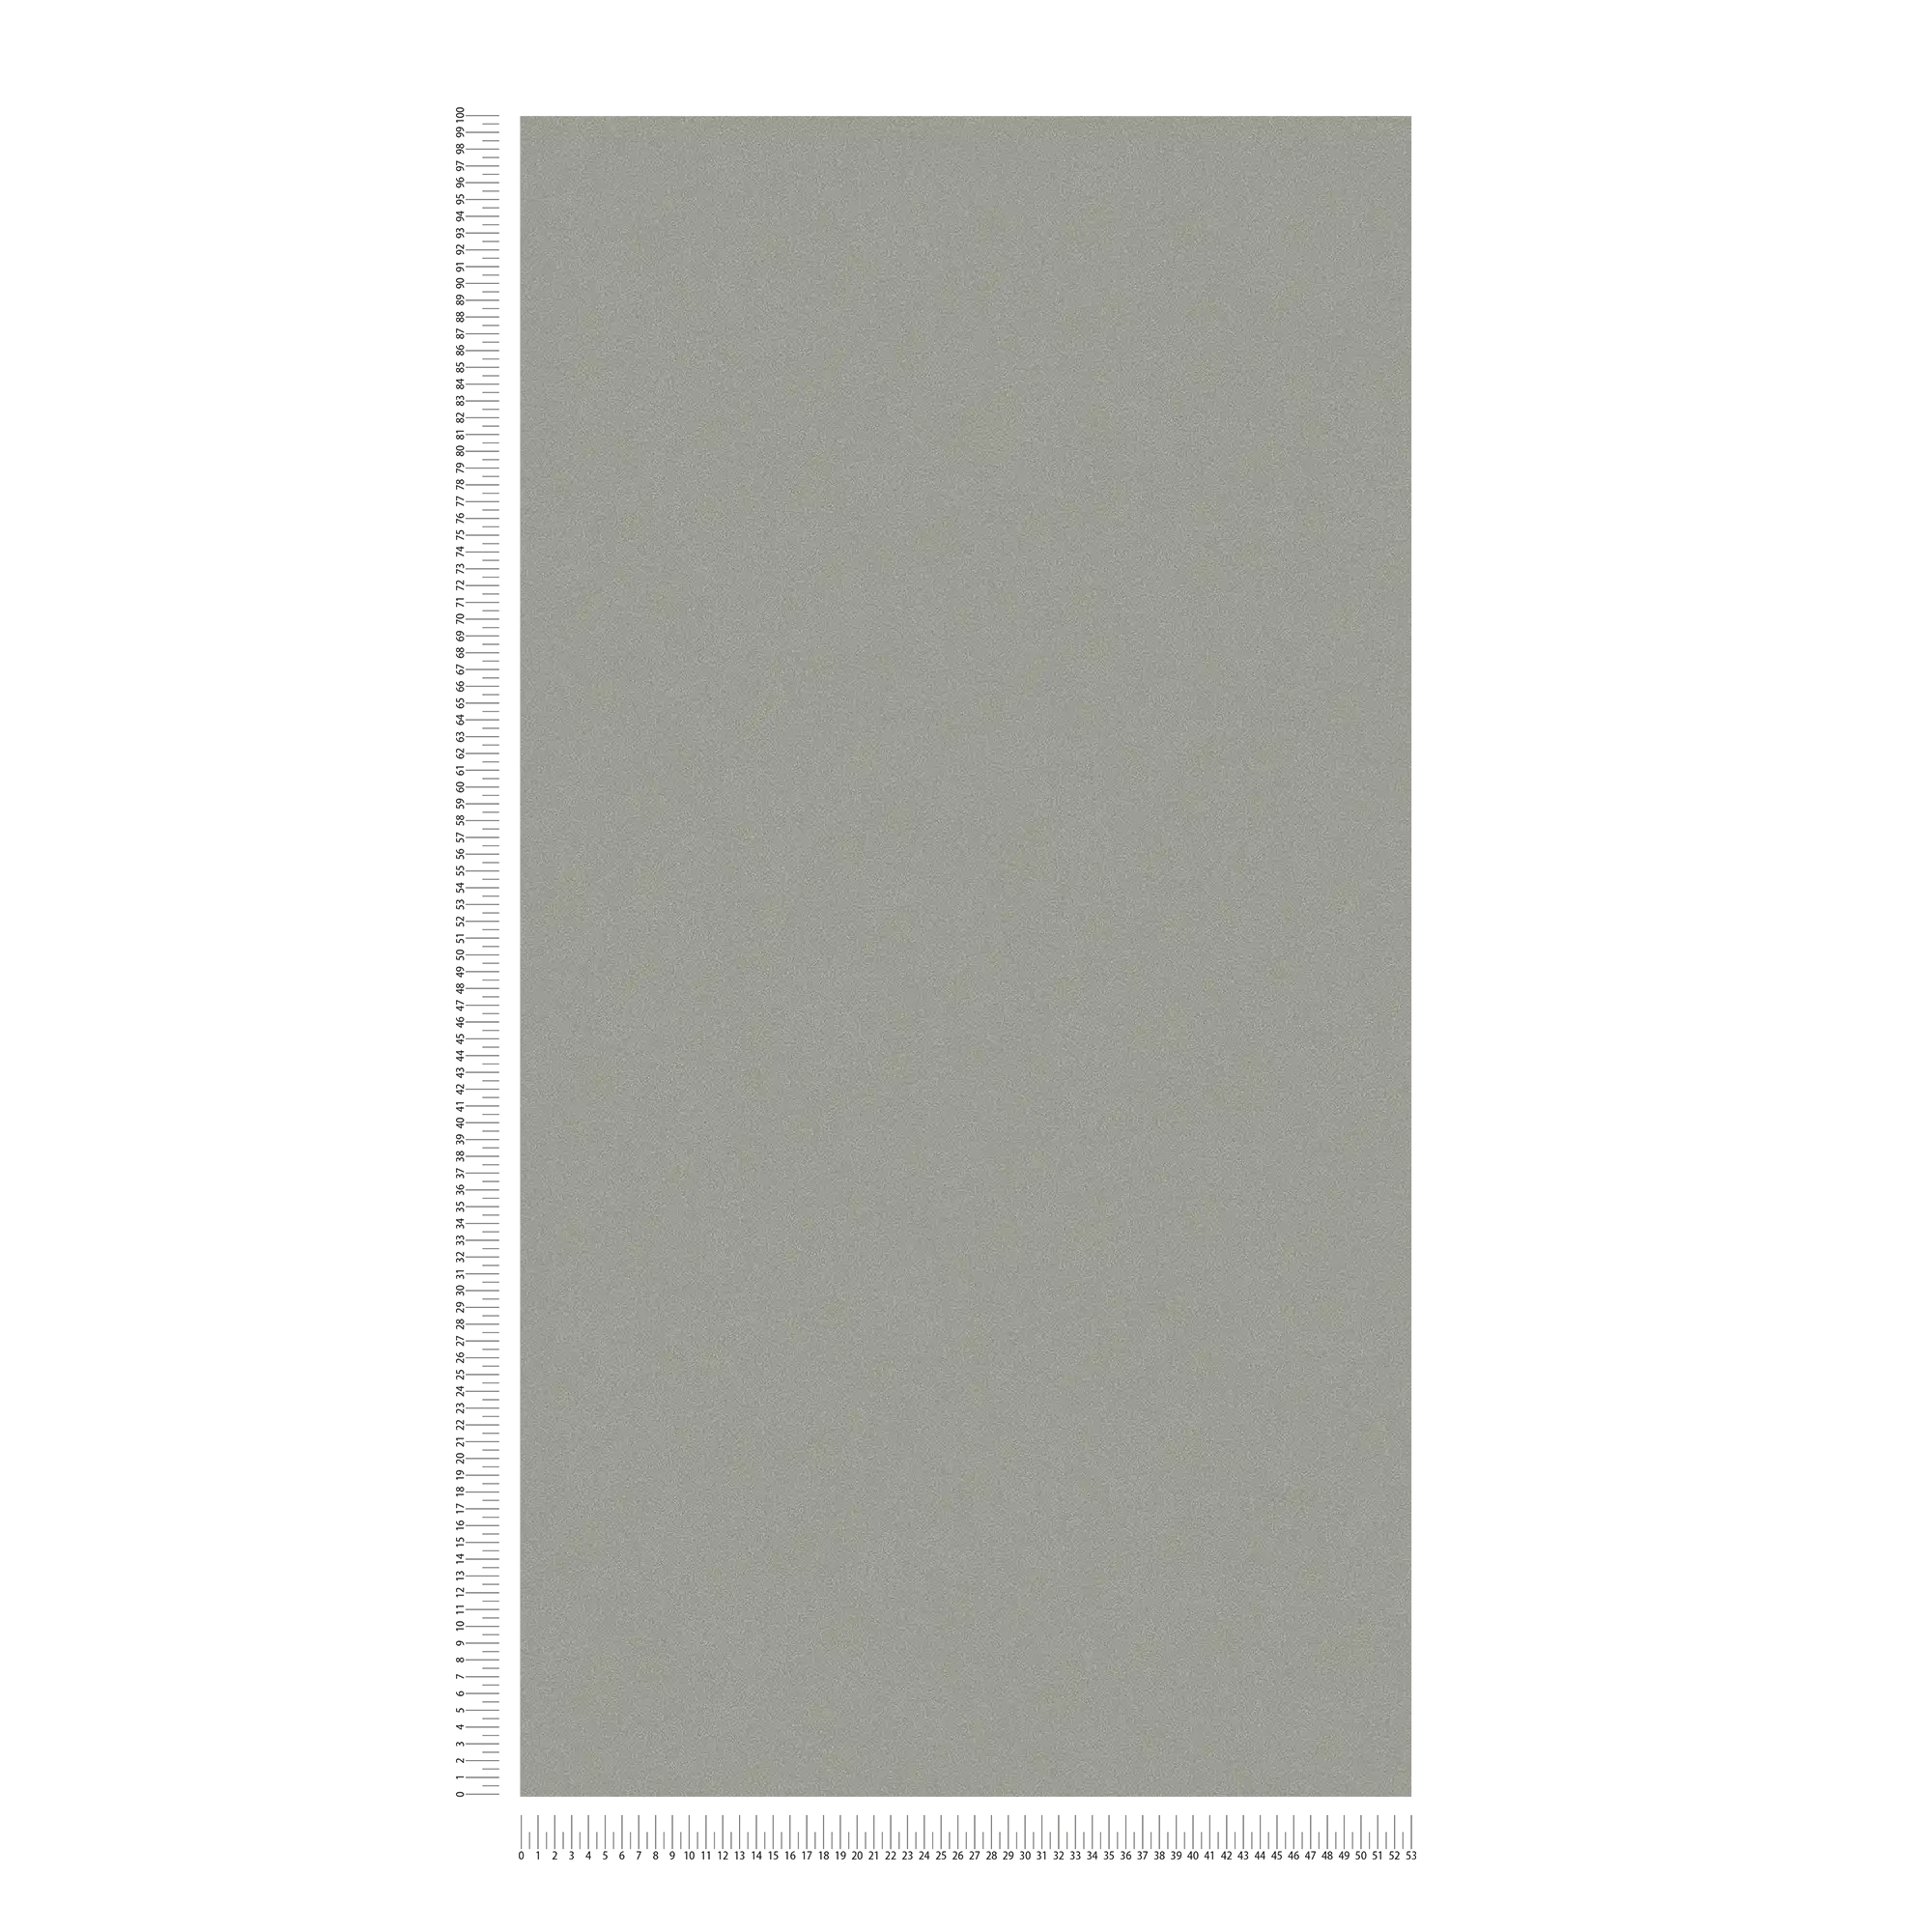             Carta da parati in tessuto non tessuto color grigio scuro con superficie opaca e tratteggio a colori
        